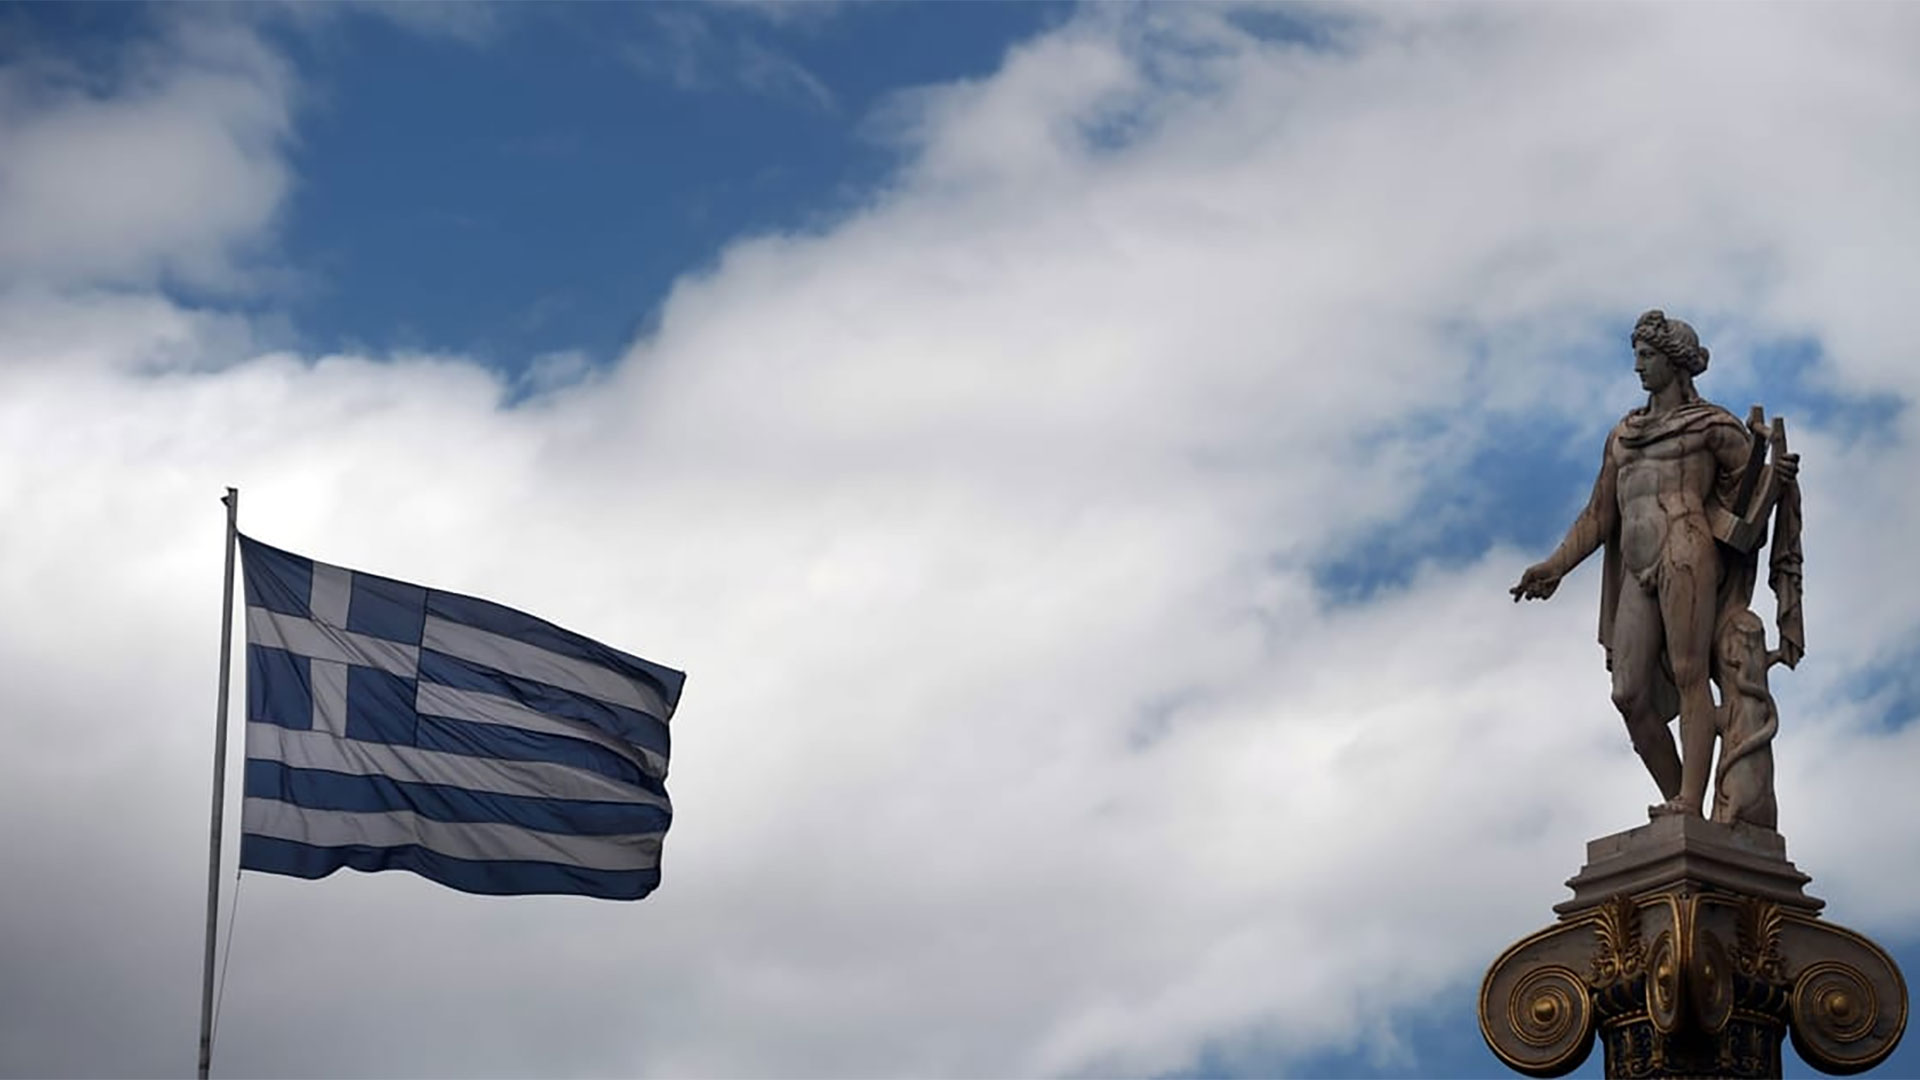 Σε άθλια θέση η Ελλάδα στην ελευθερία του τύπου